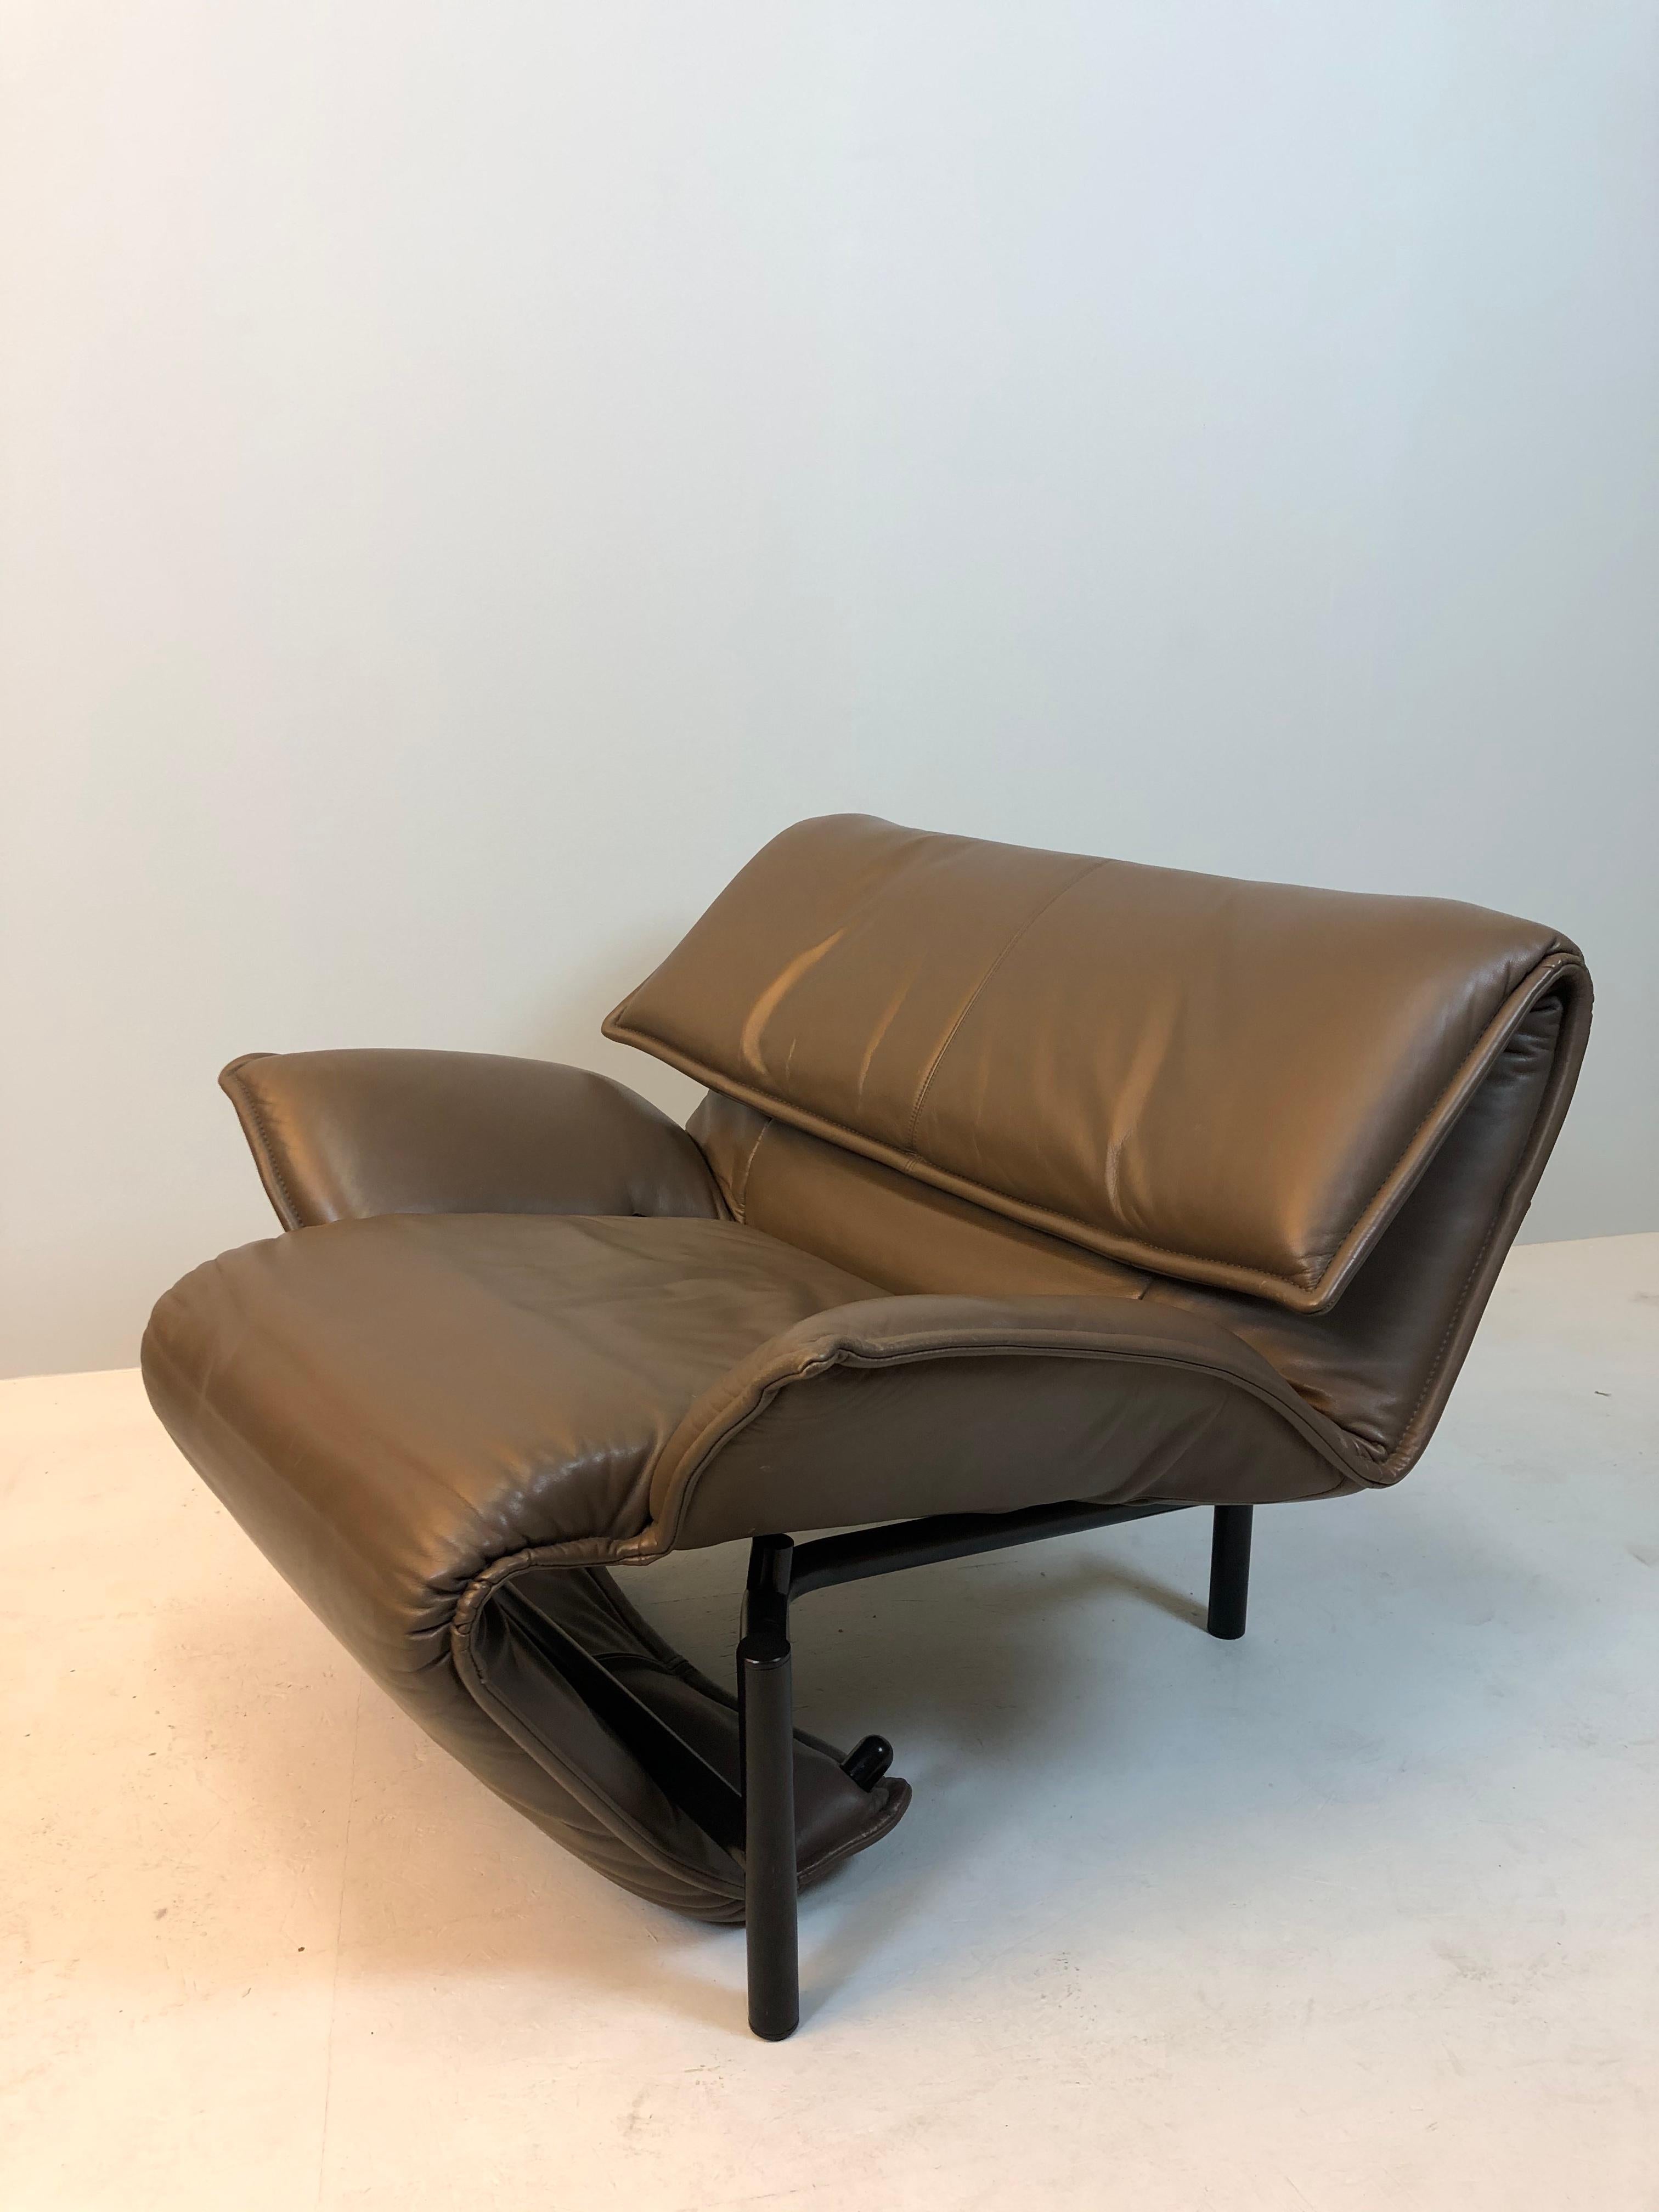 Fauteuil en cuir design de Vico Magistretti pour Cassina

Design/One classique original en cuir marron

Dimensions : selon le réglage, env. L : 90/P : 80/H : 76 cm

Le designer italien Vico Magistretti a conçu cette chaise dans les années 80 pour